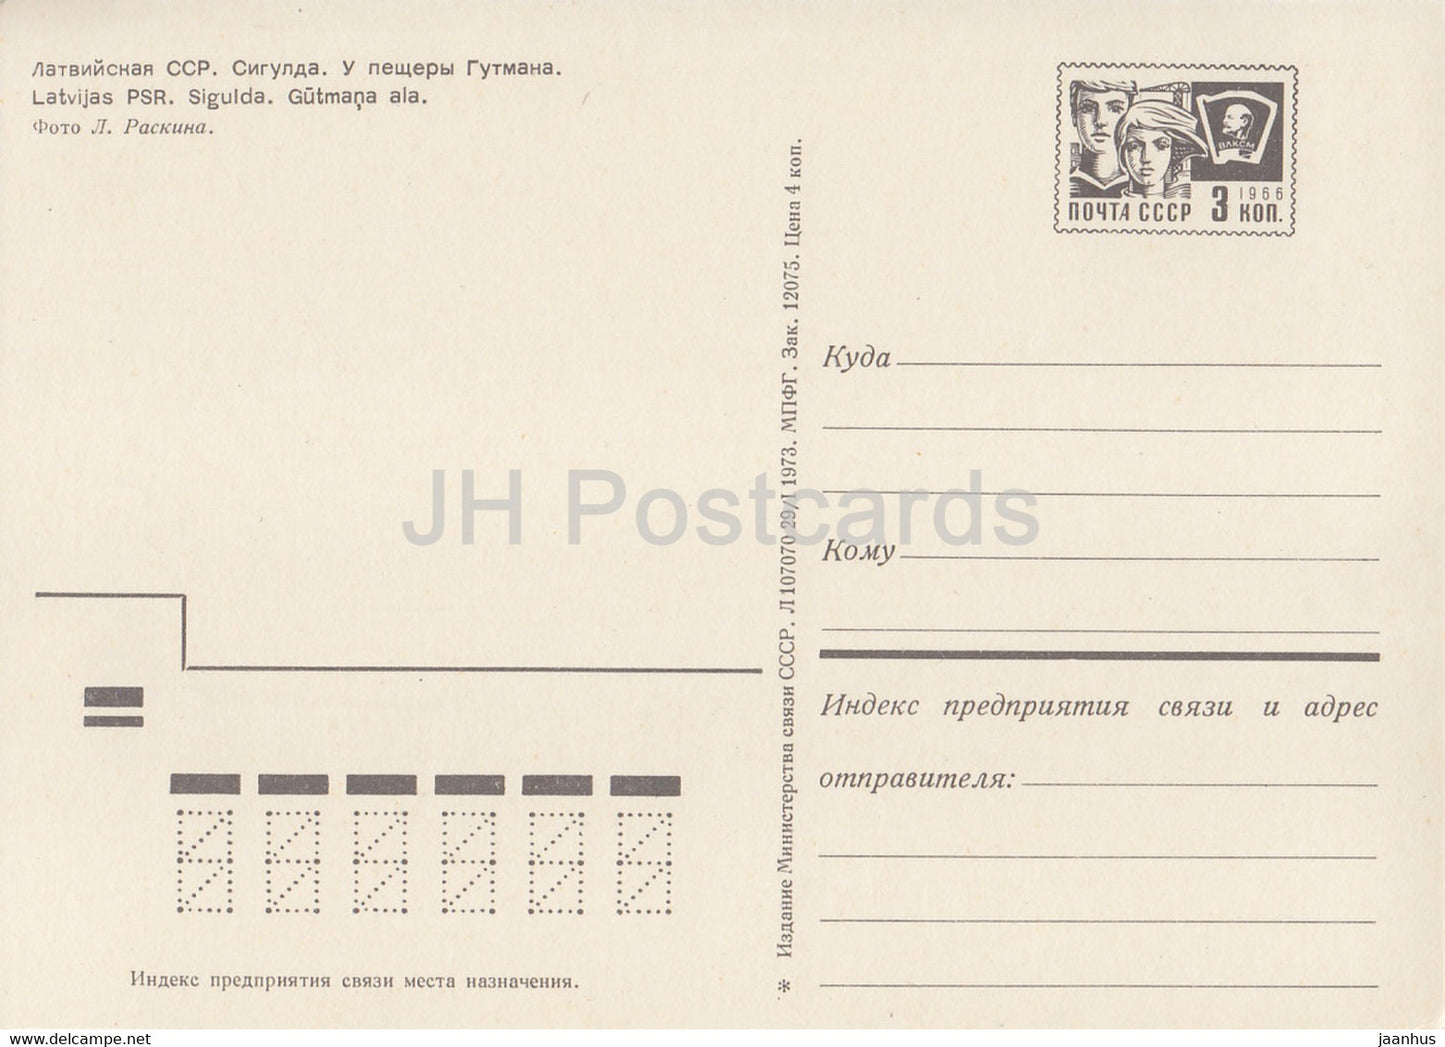 Sigulda - Près de la grotte de Gutman - voiture Moskvich - entier postal - 1973 - Lettonie URSS - inutilisé